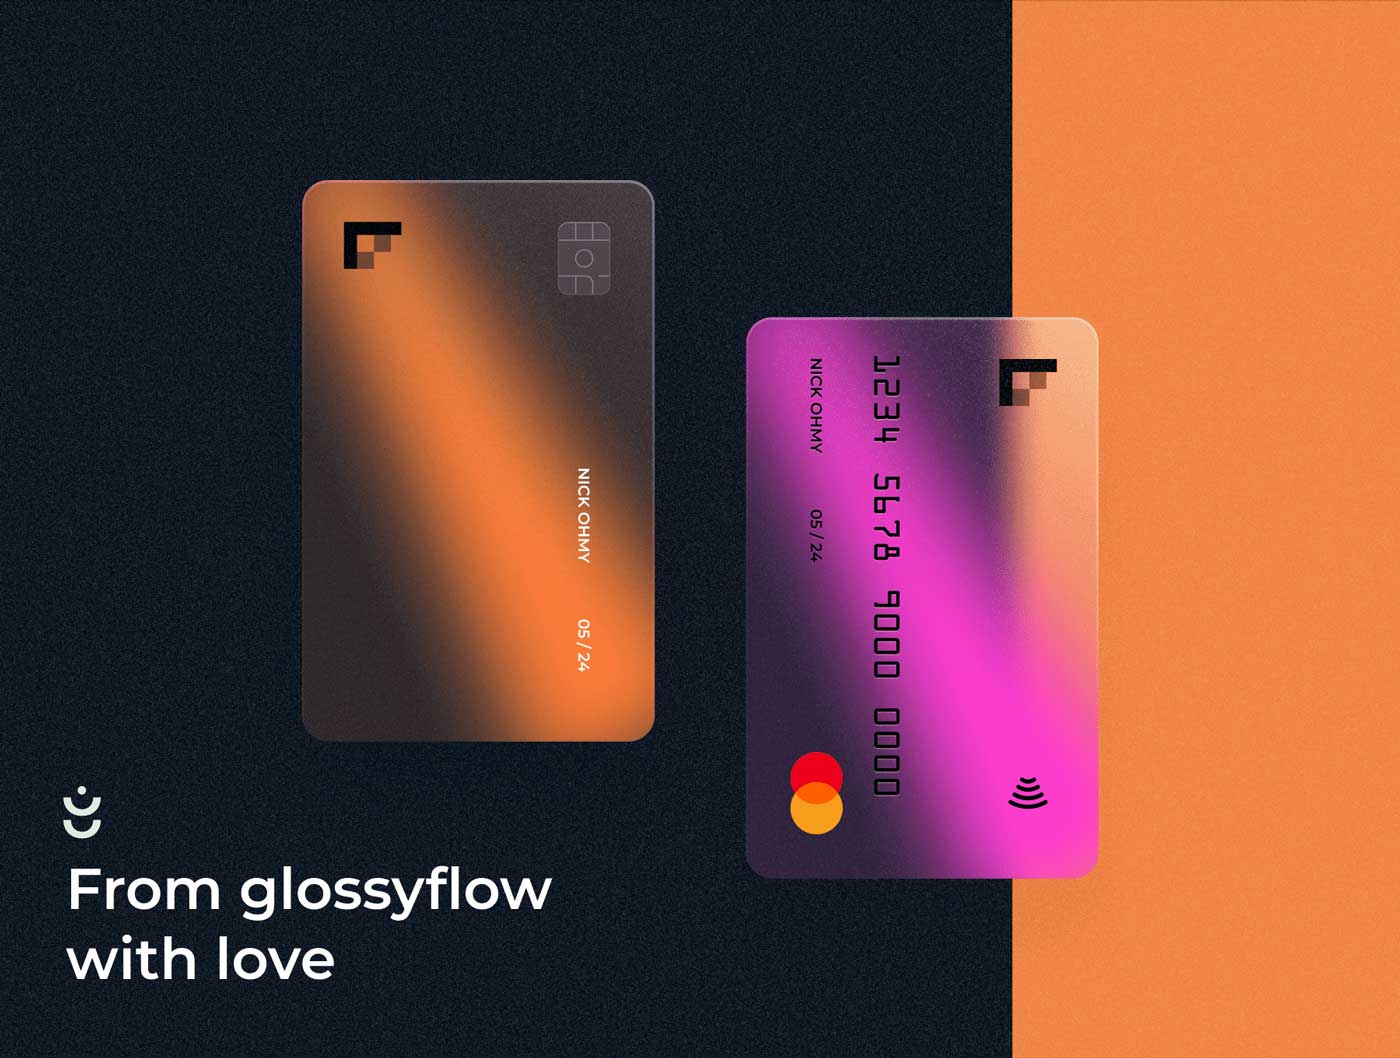 Glossy银行卡样式设计 .fig素材